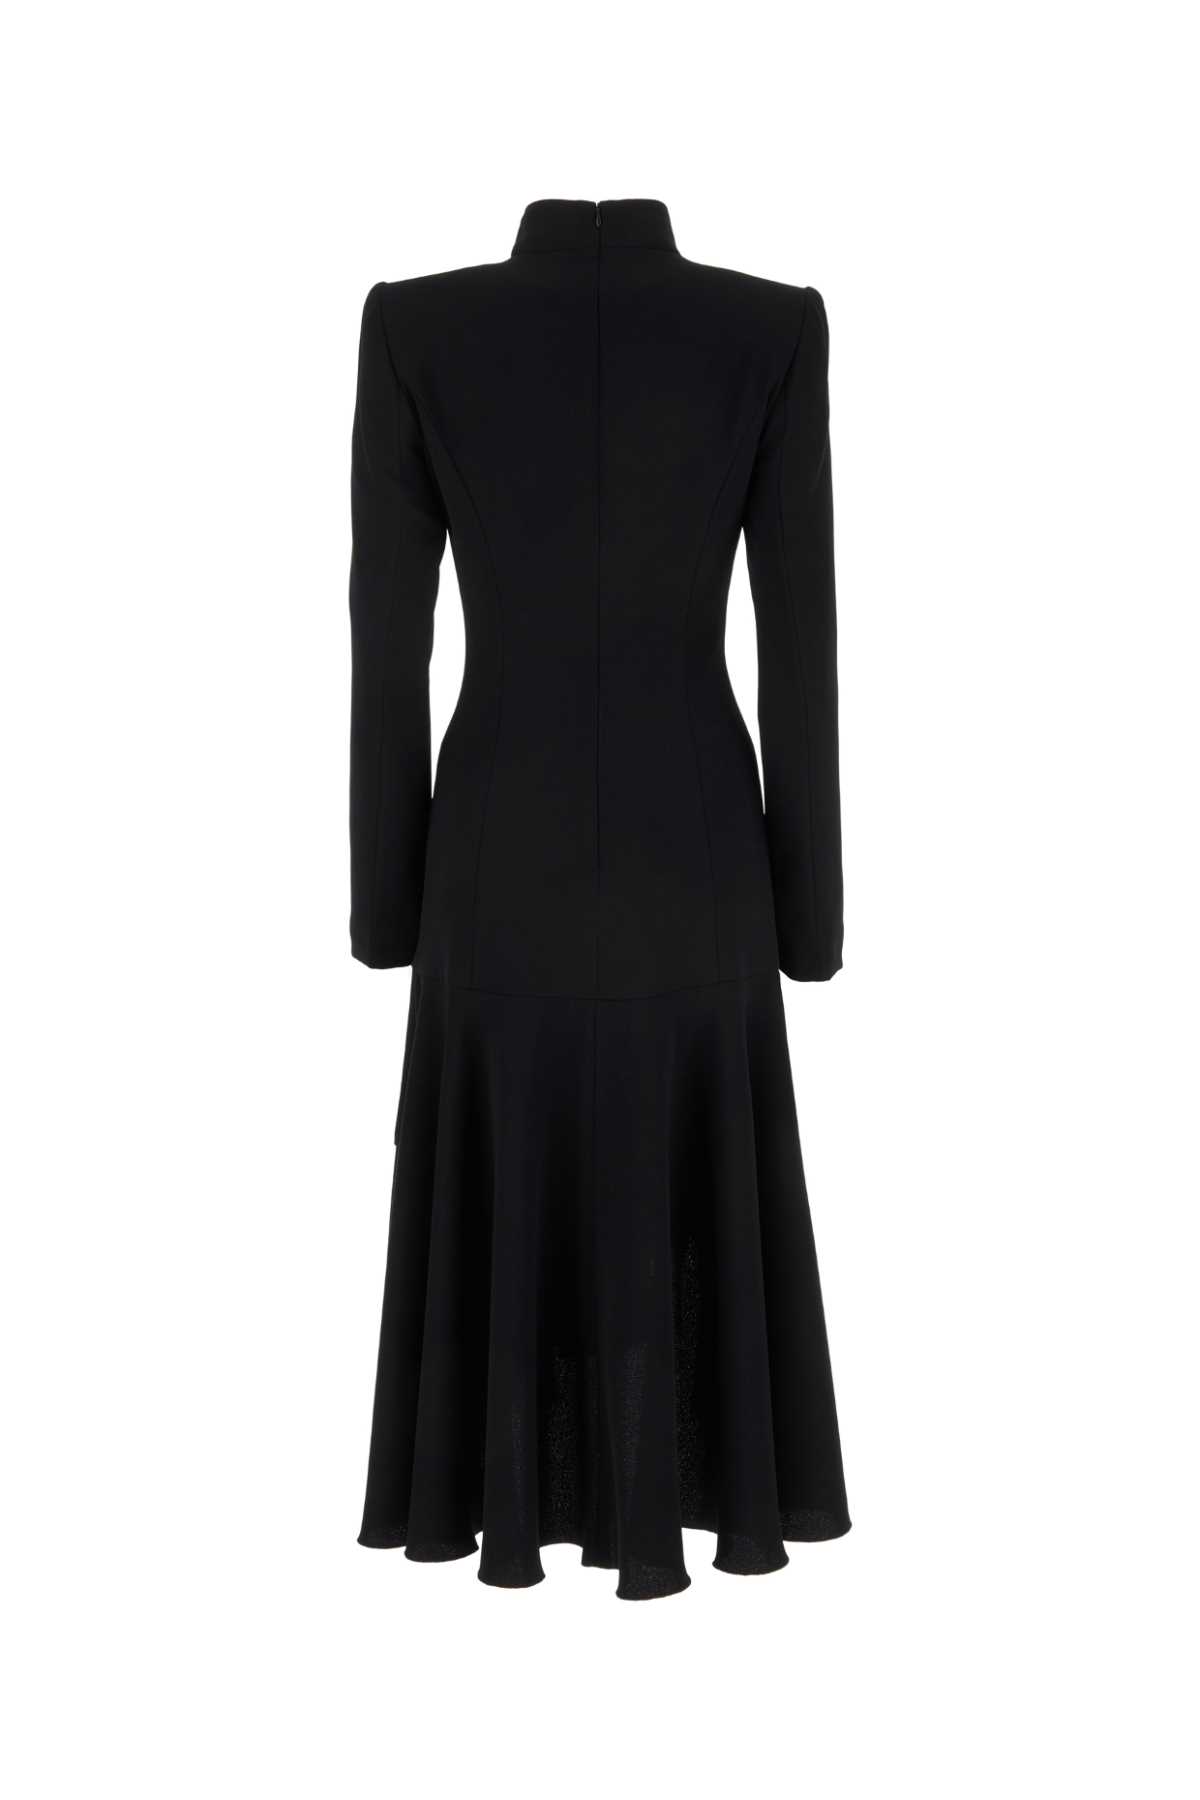 Shop Dries Van Noten Black Jersey Drey Dress